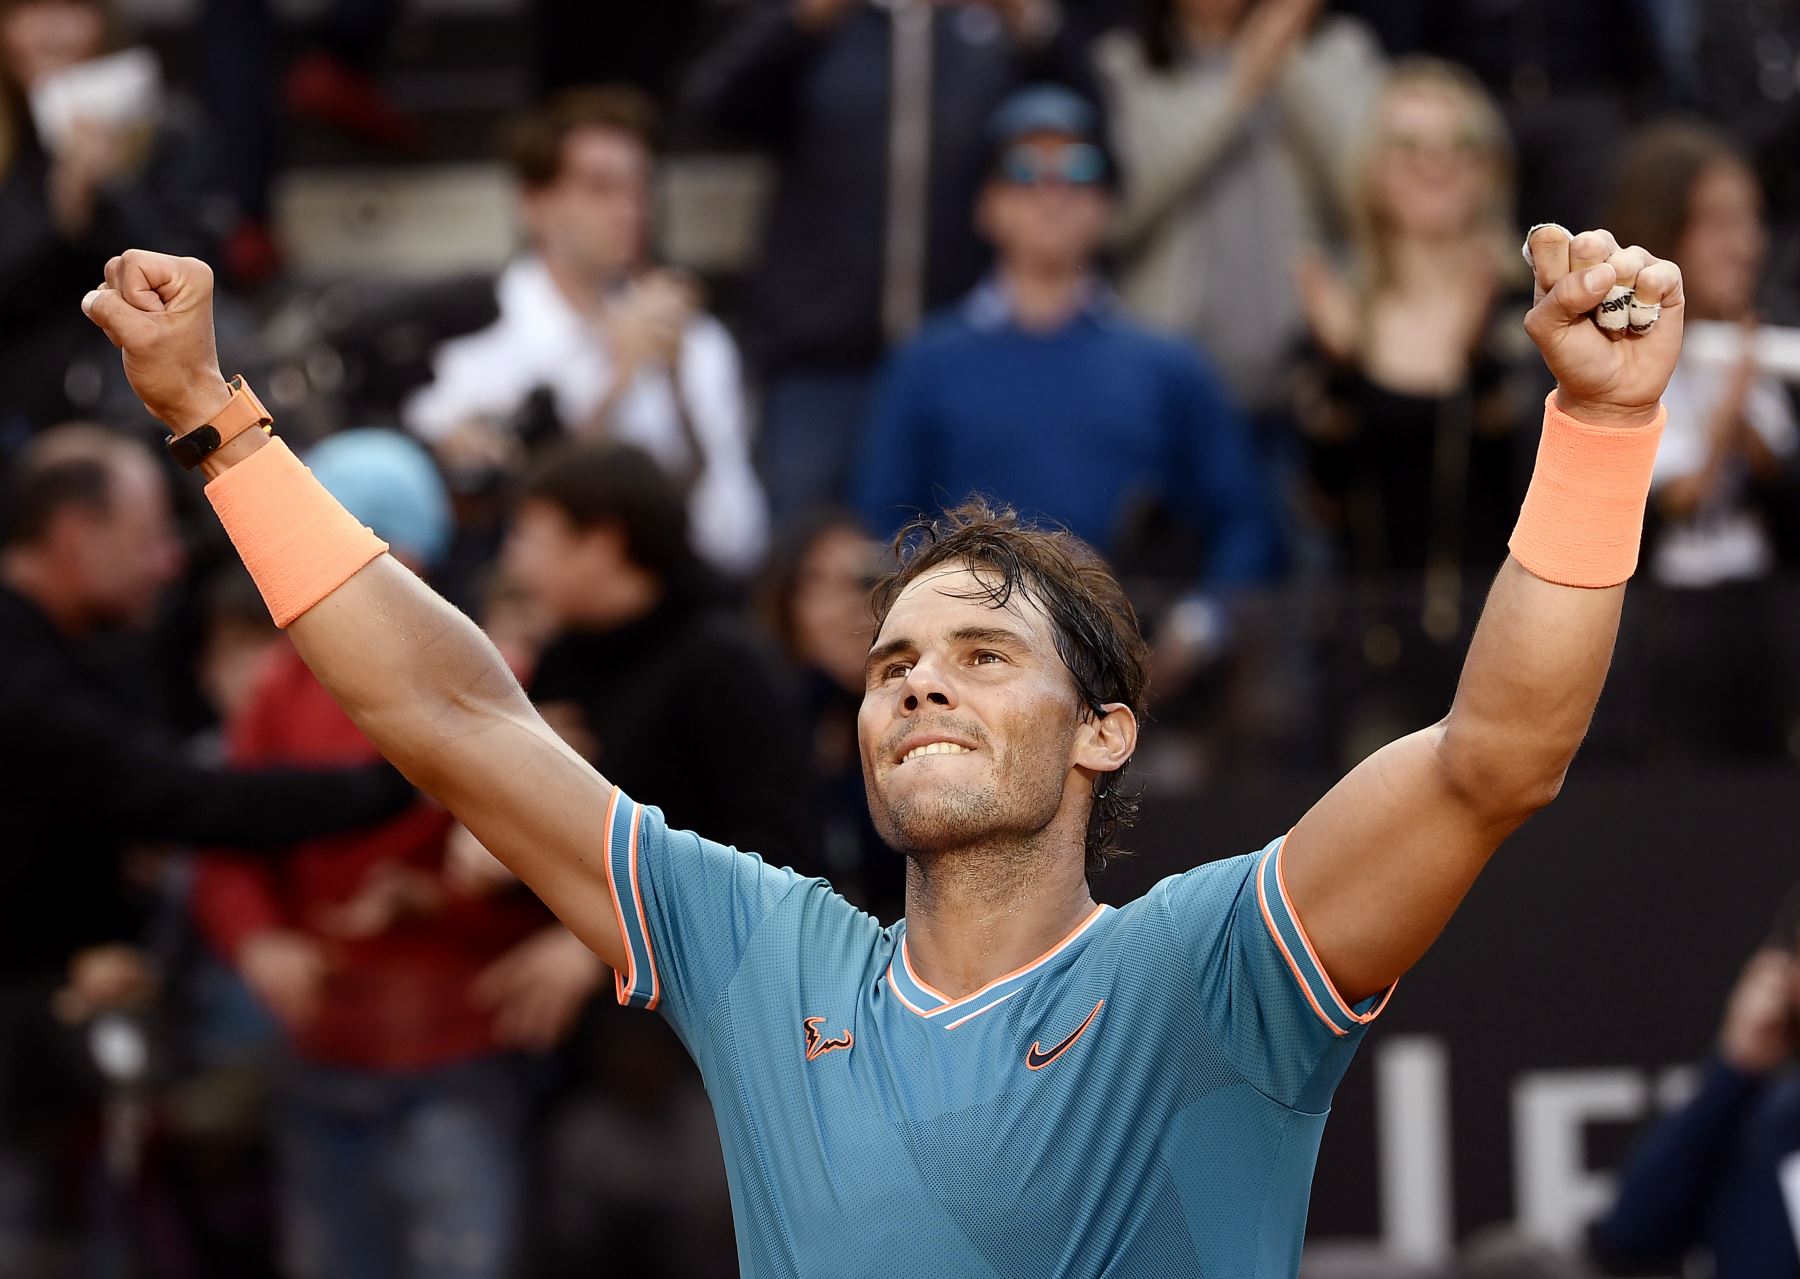 Rafael Nadal de España celebra después de ganar contra Novak Djokovic de Serbia durante su último partido de tenis del torneo ATP Masters en el Foro Italico en Roma.
Foto:AFP